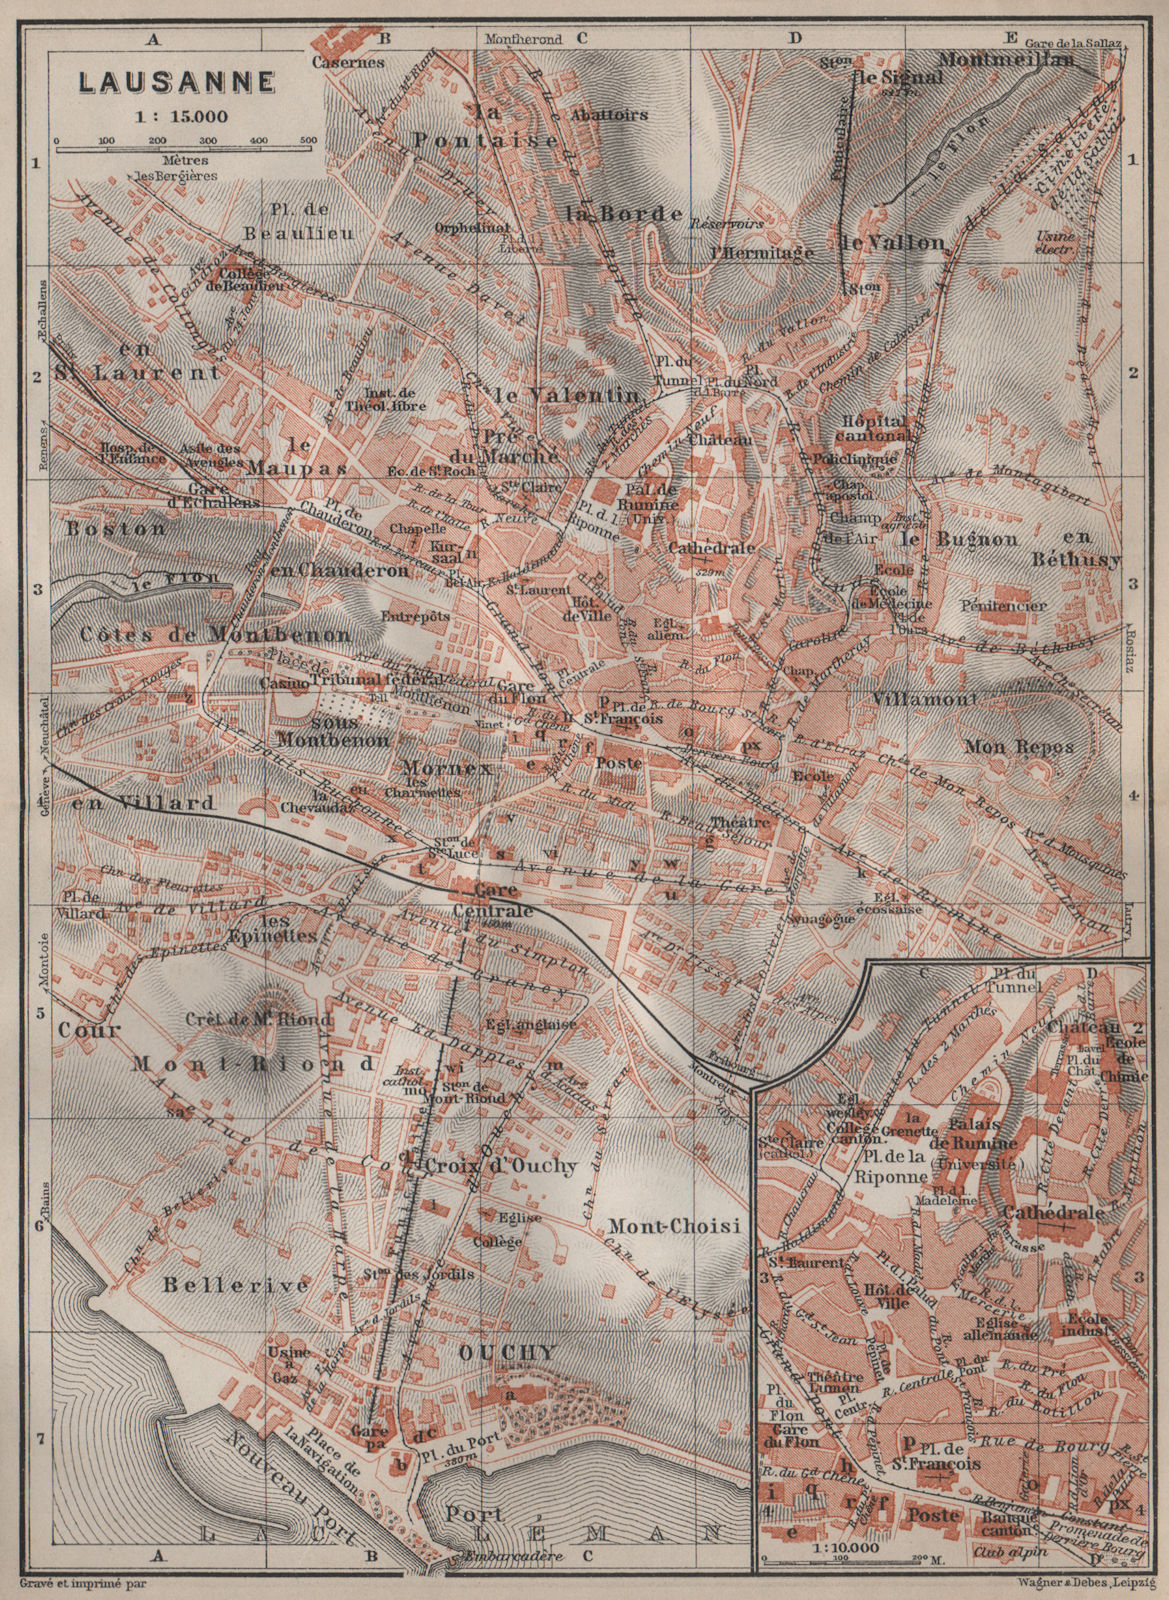 Associate Product LAUSANNE. town city stadtplan. Switzerland Suisse Schweiz carte karte 1913 map